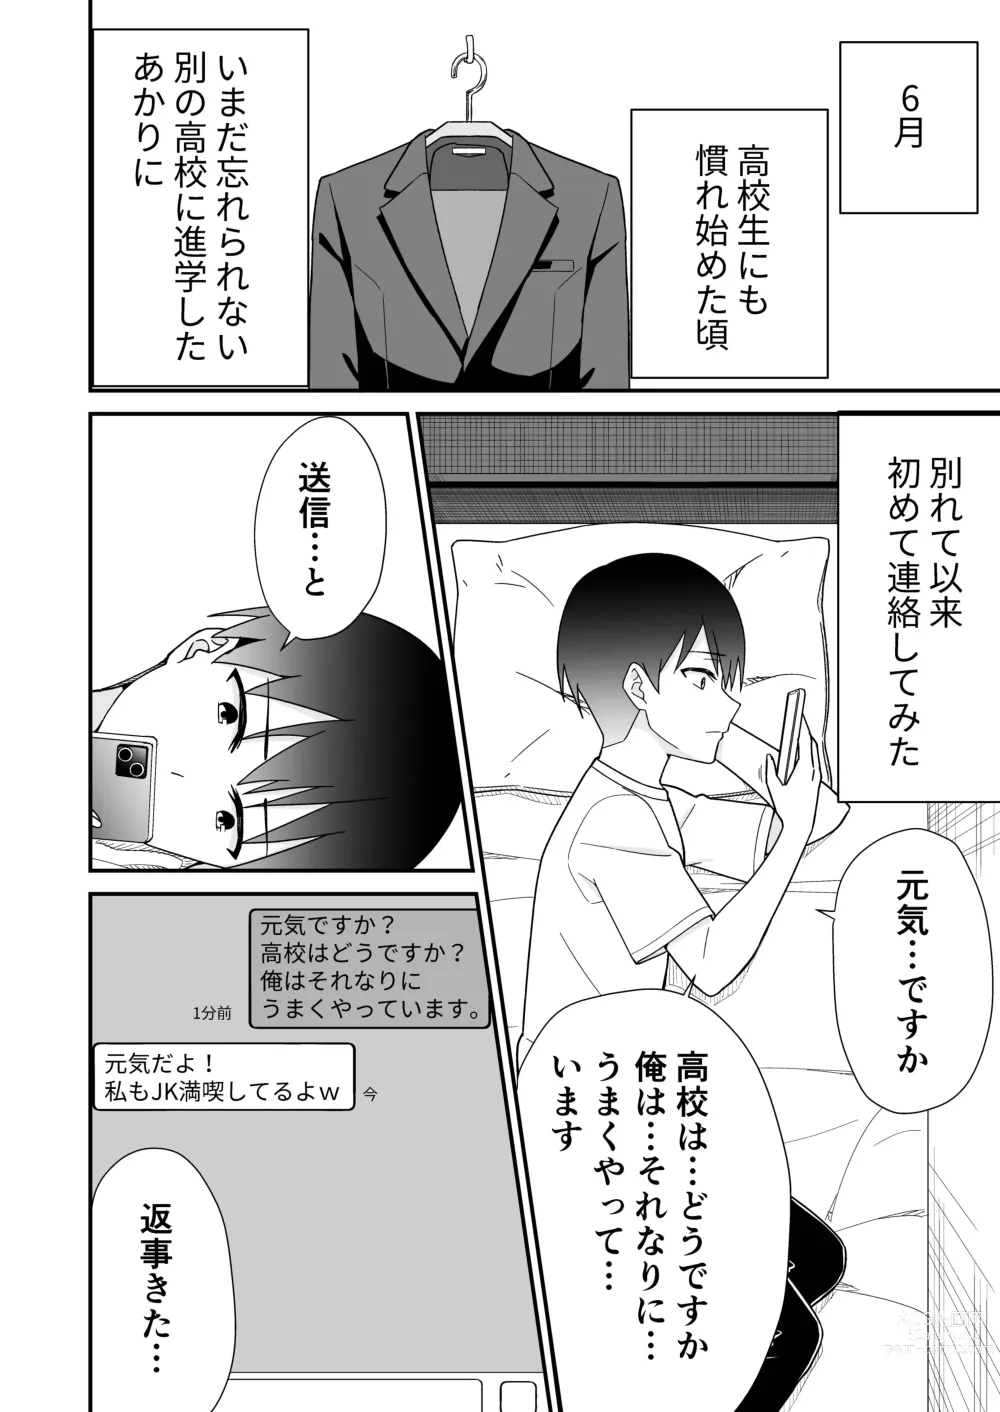 Page 10 of doujinshi Hajimete no Motokano